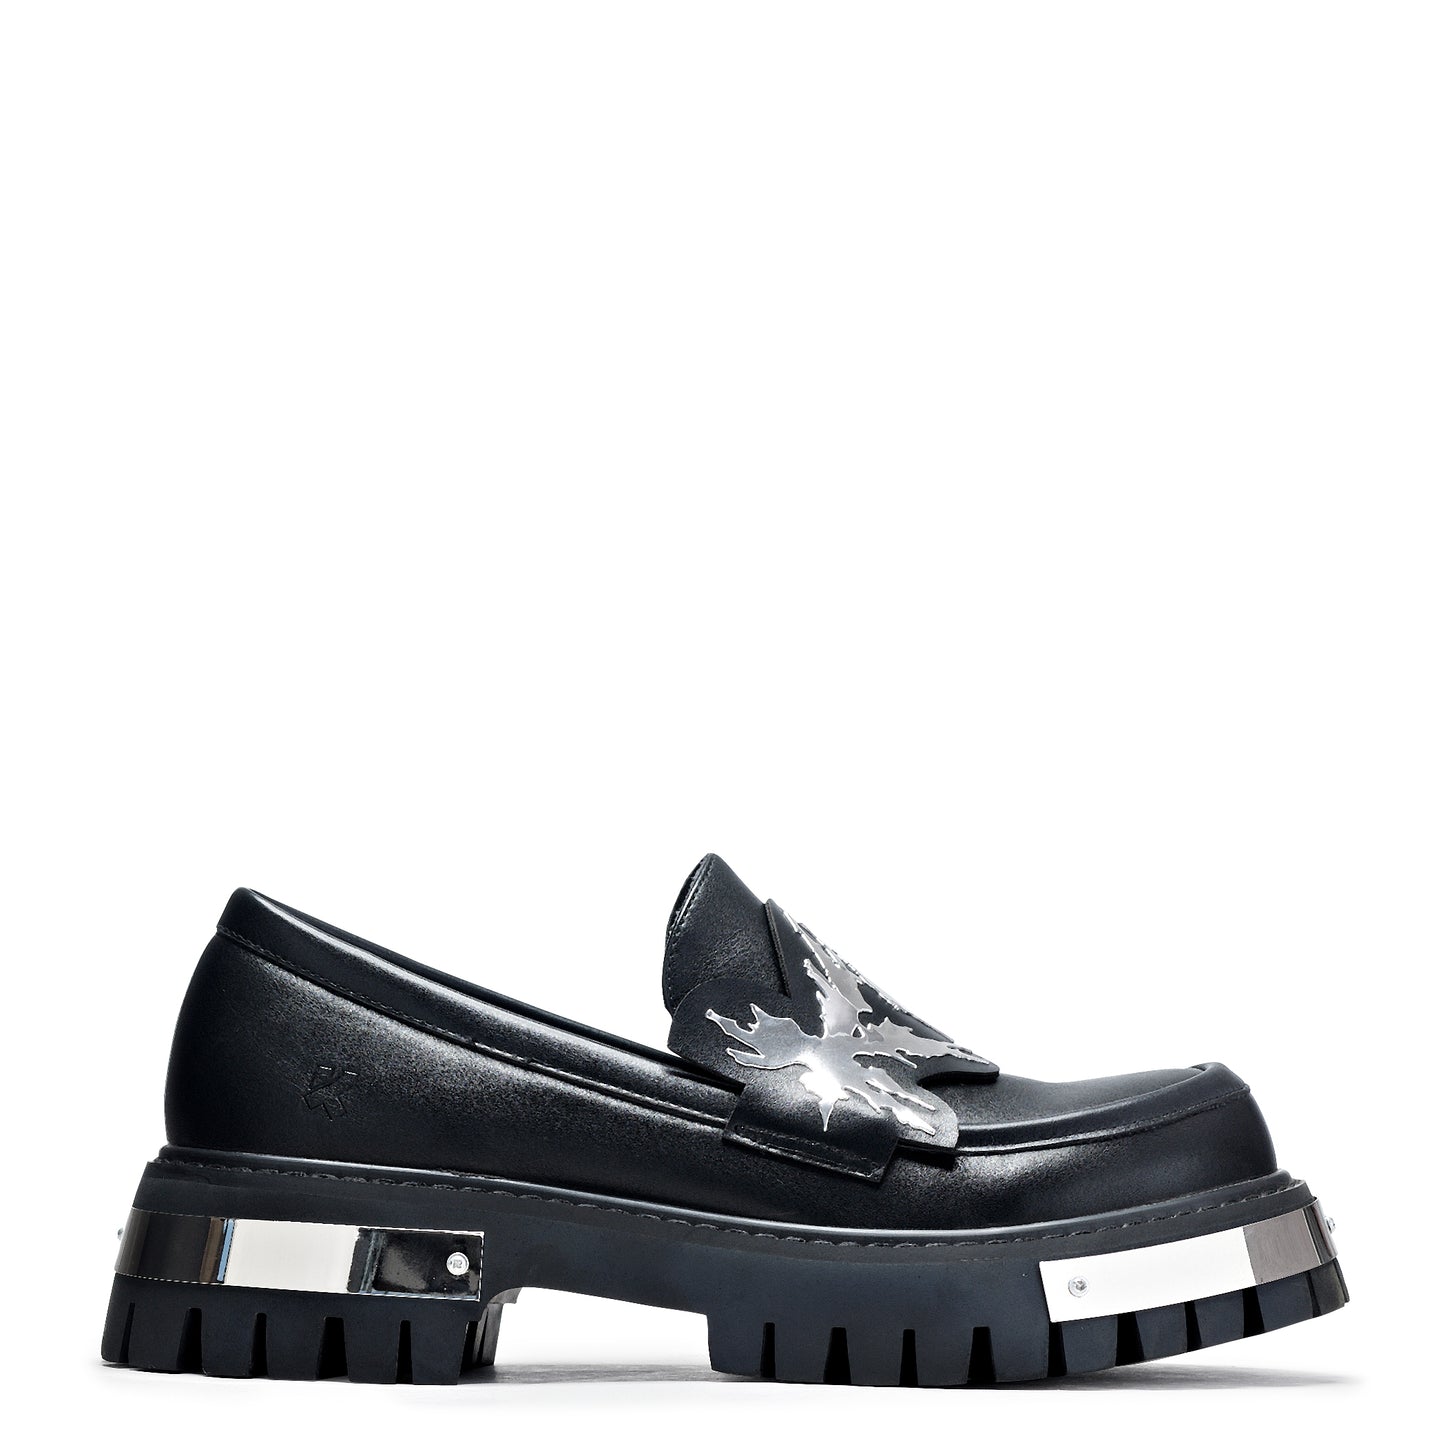 My Men's Metal Loafers - Black - Shoes - KOI Footwear - Black - Side View